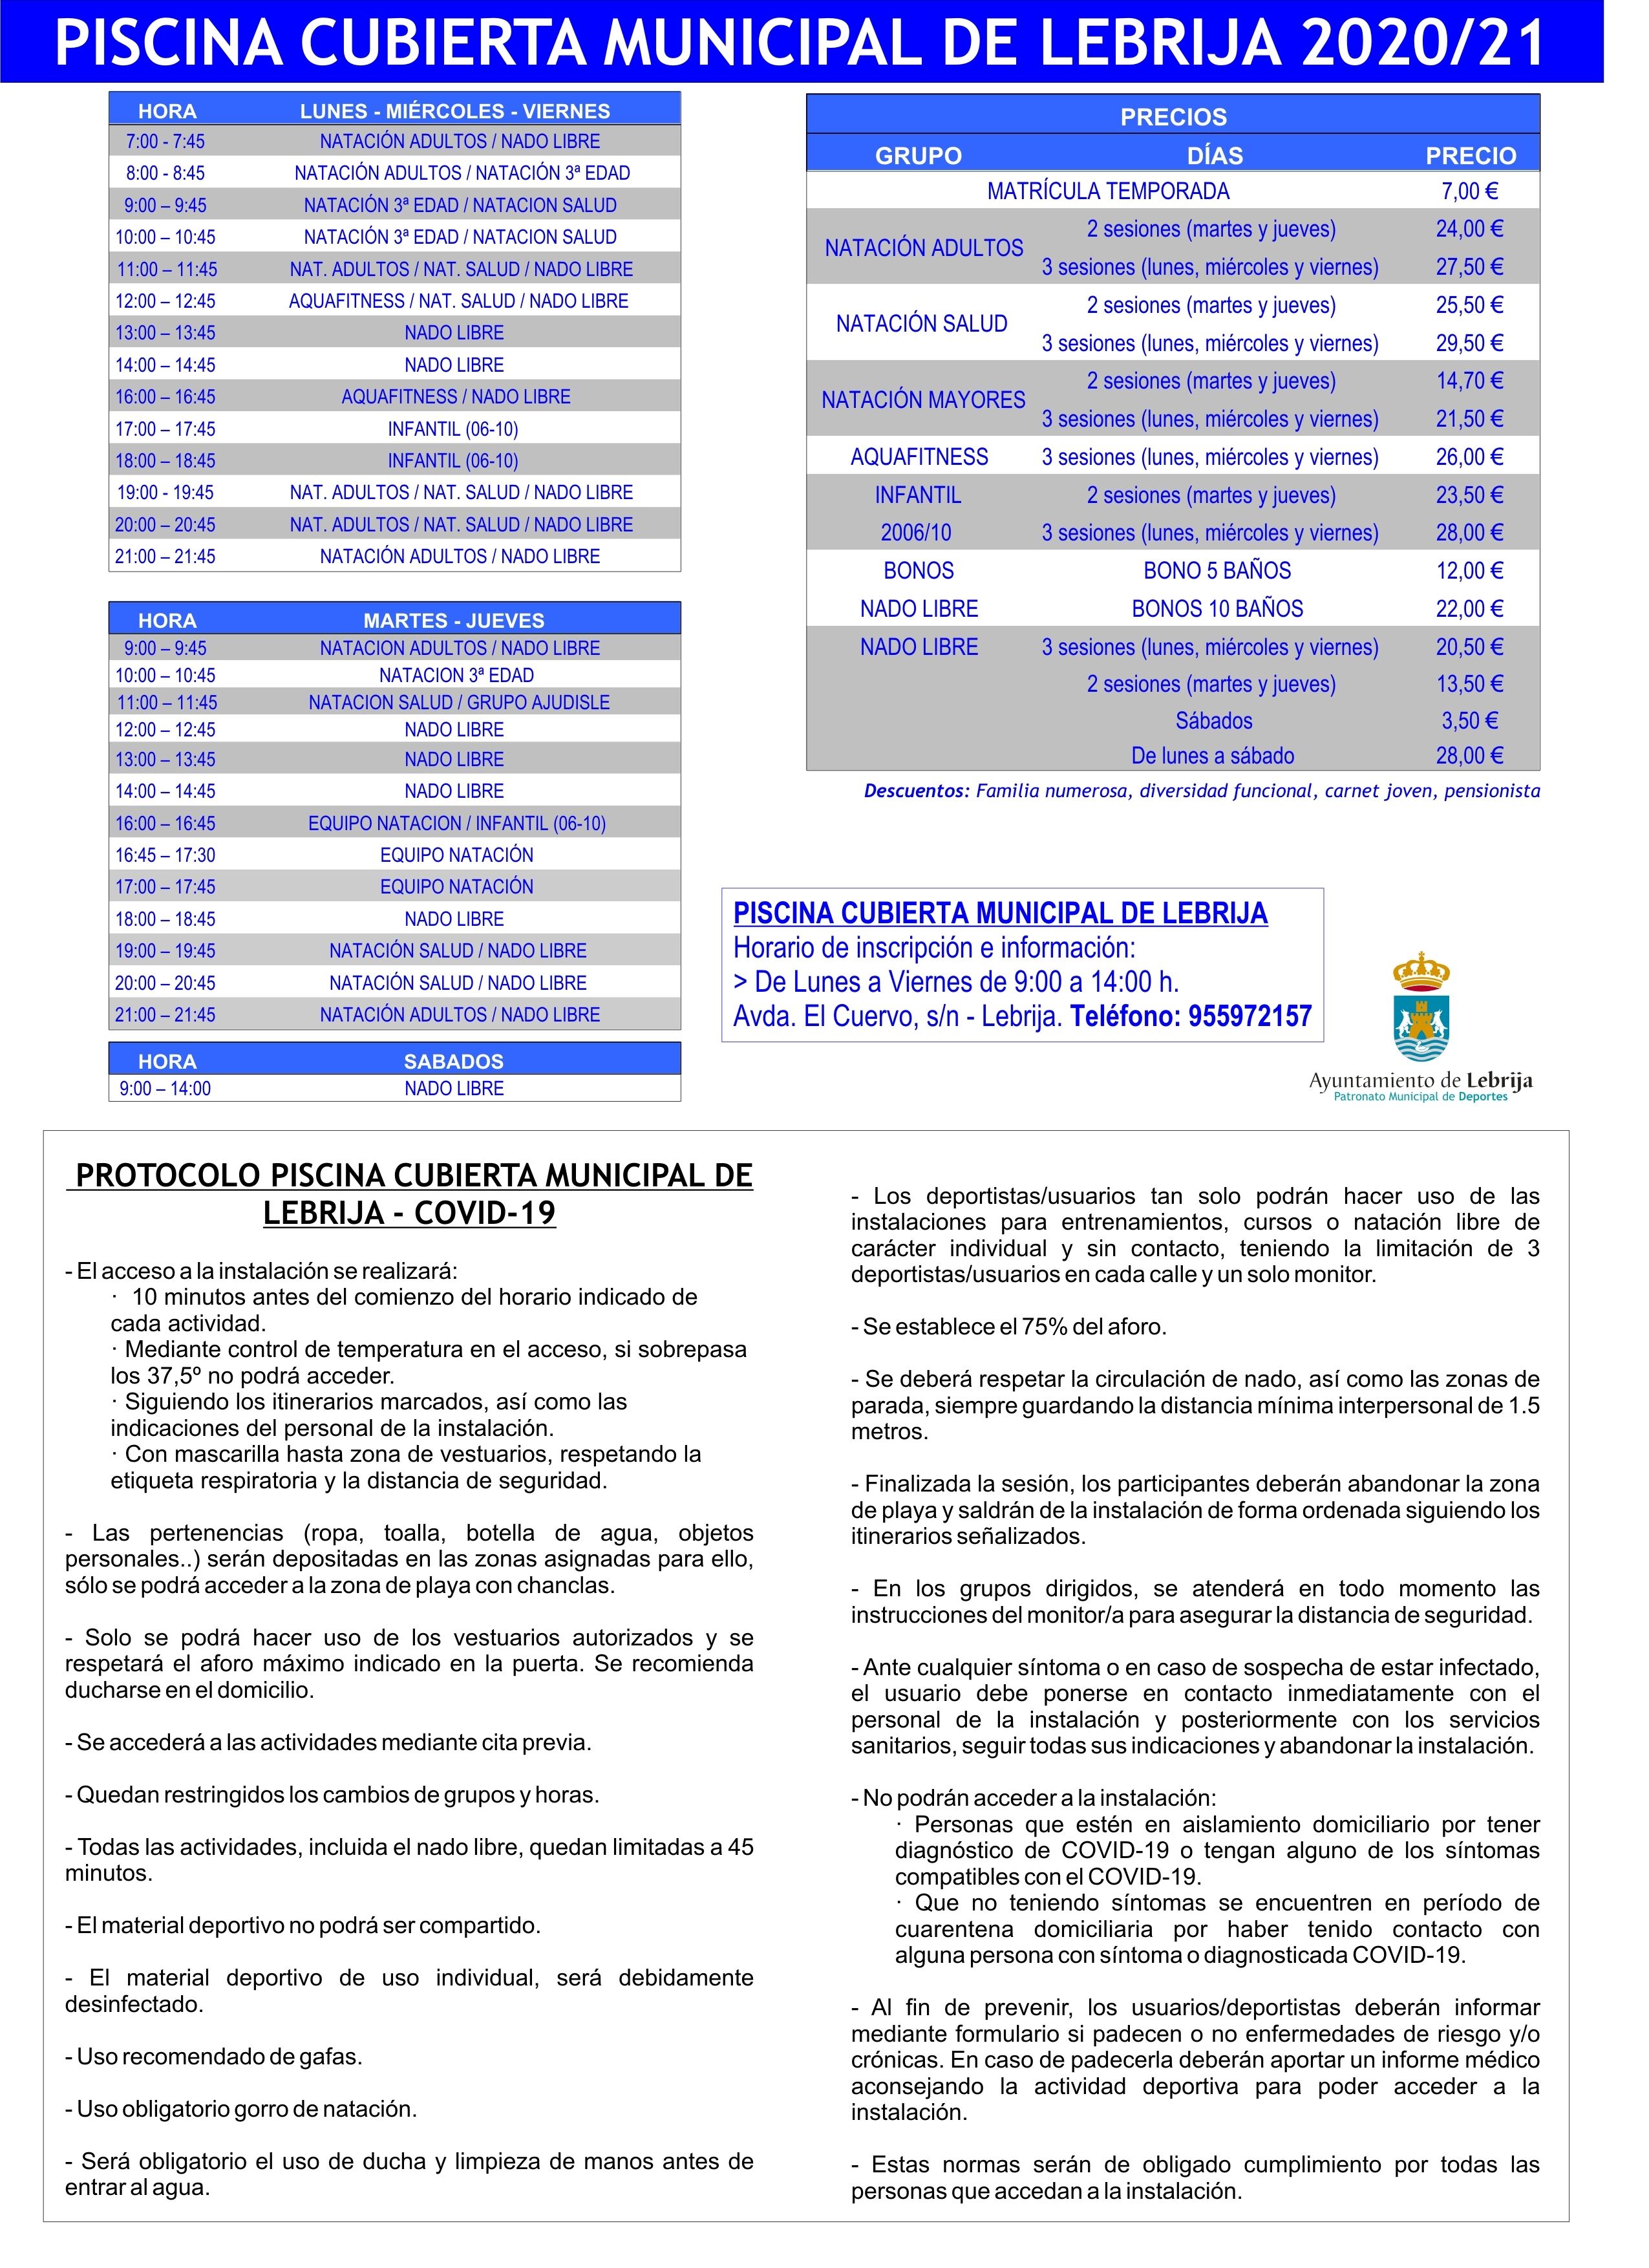 Piscina Cubierta Horarios y precios 20-21